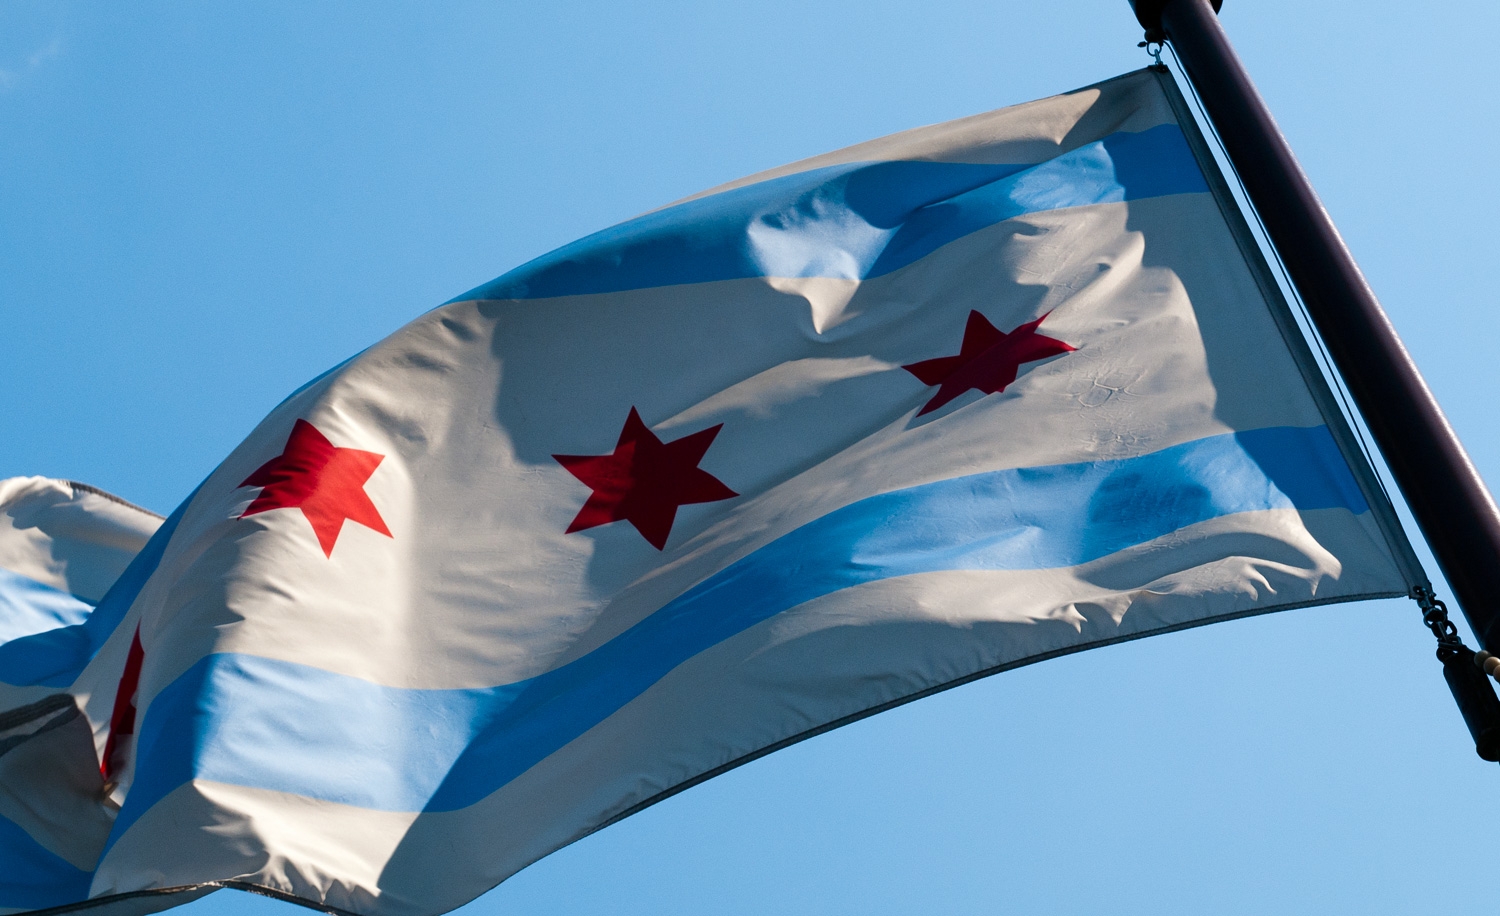 The Chicago Flag